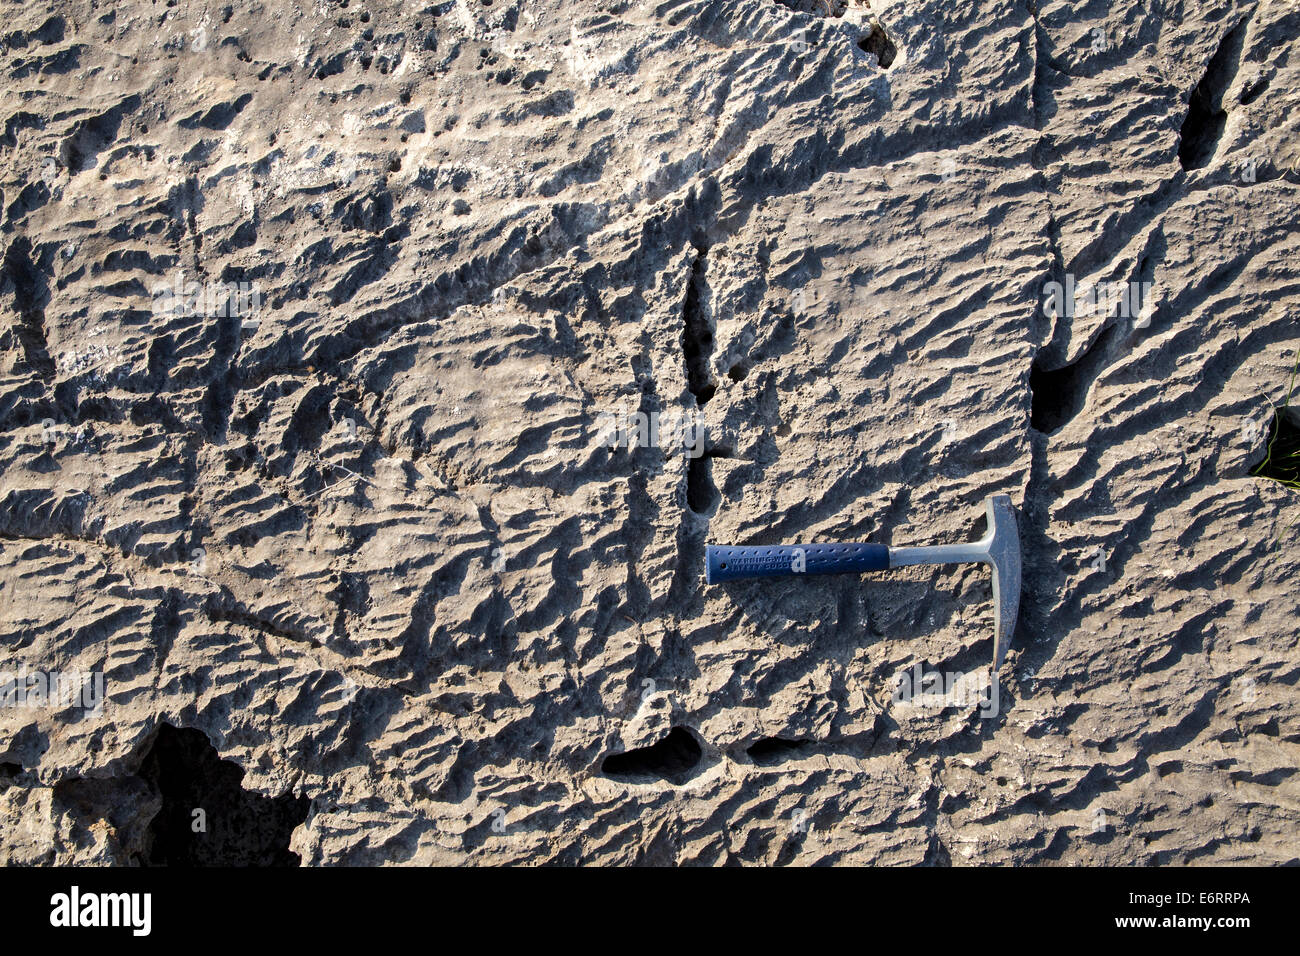 Ein geologe Hammer auf ein verwittertes Kalkstein Oberfläche mit Muster von Spalten und Risse. Stockfoto